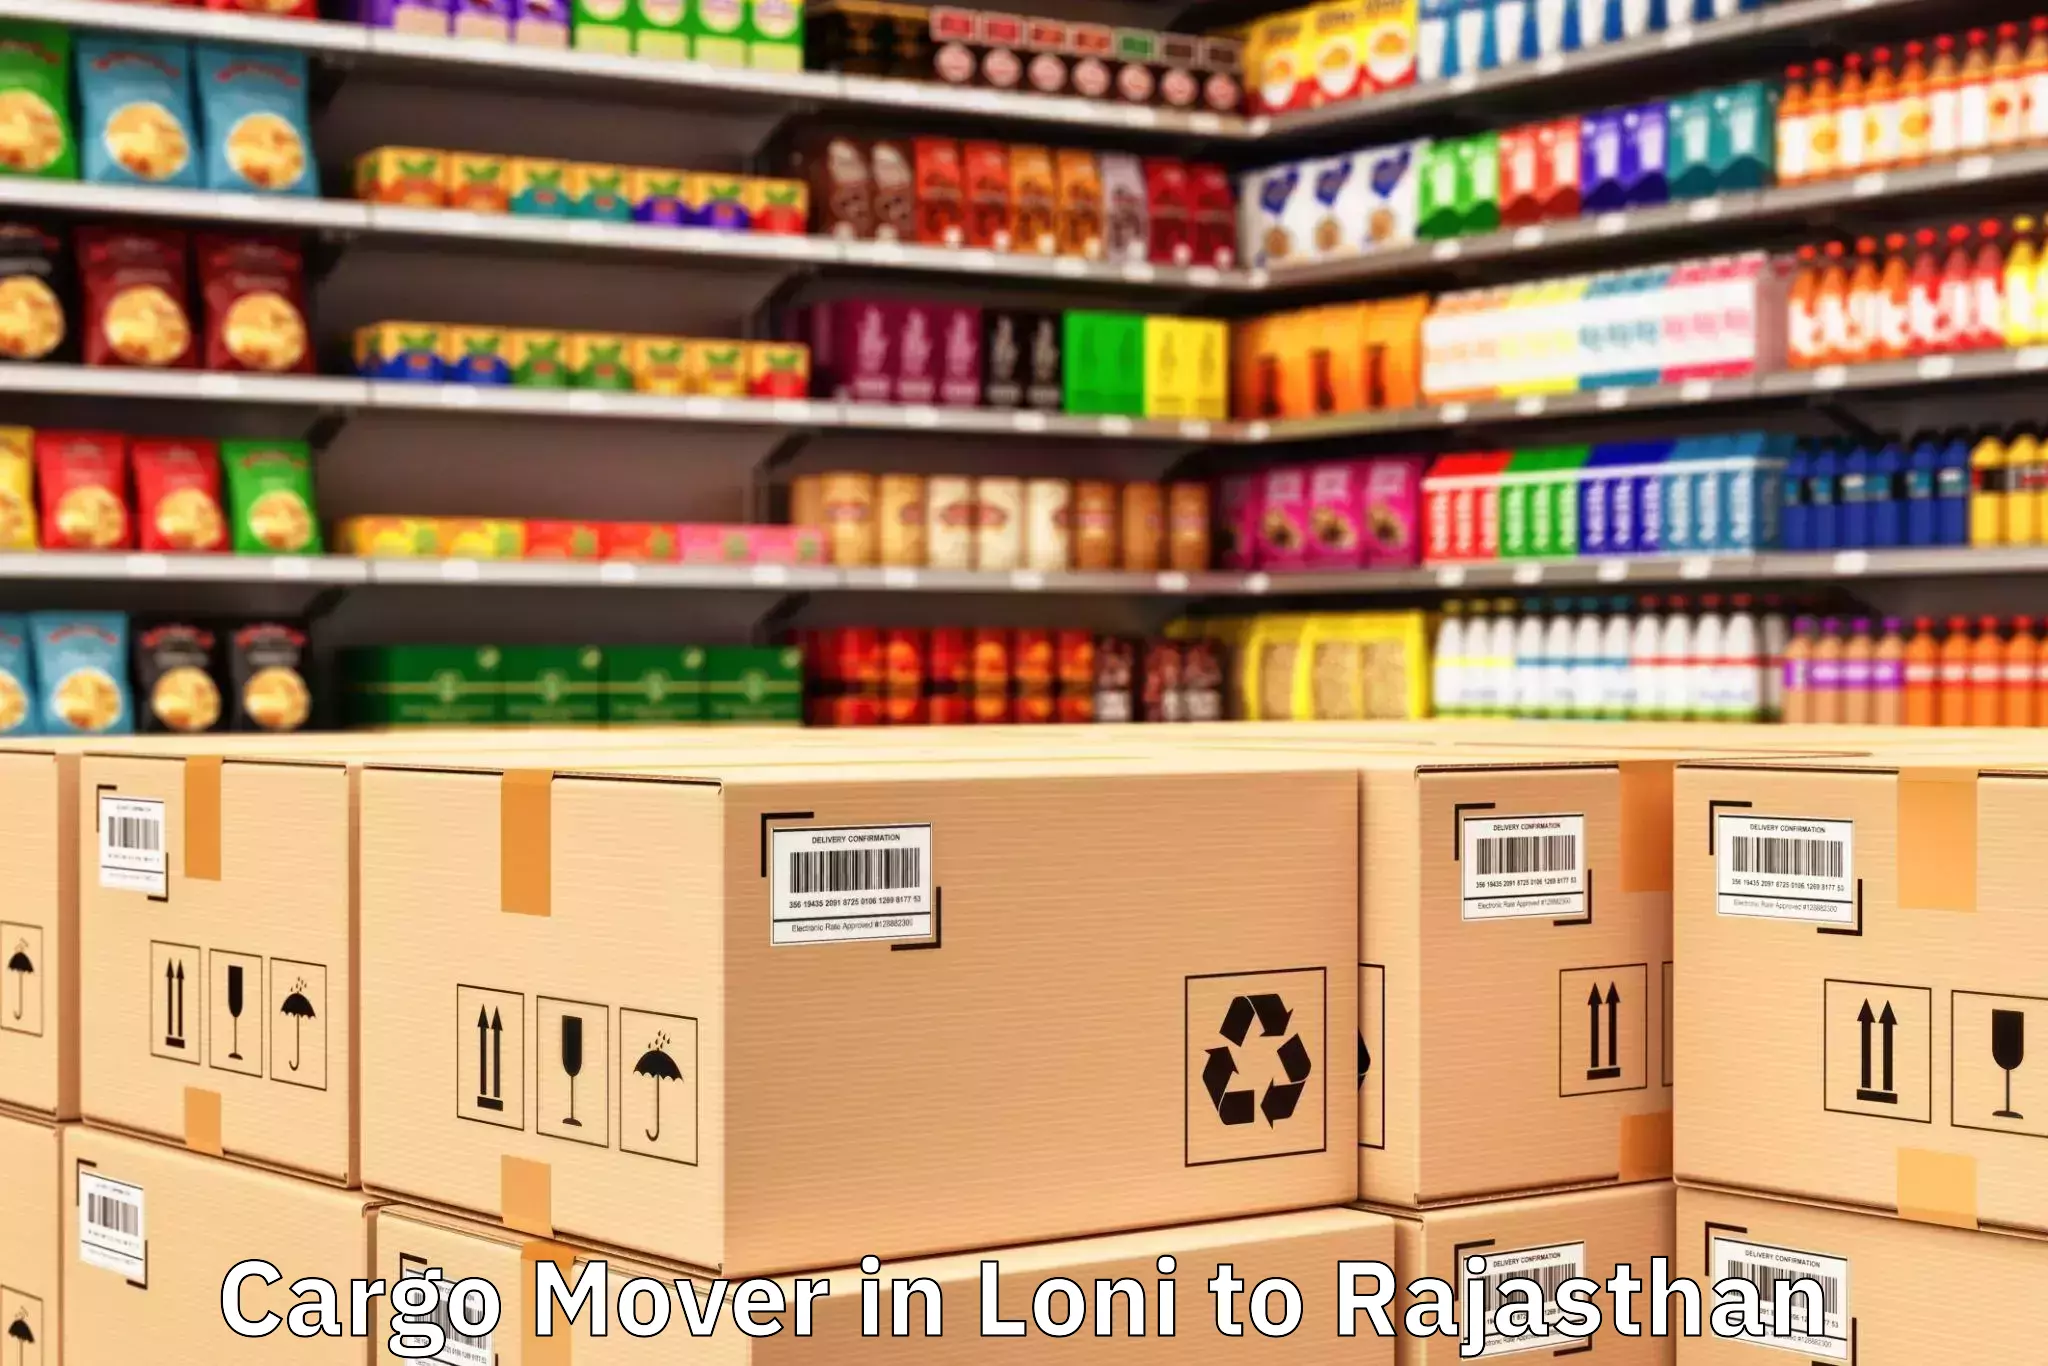 Hassle-Free Loni to Pratapgarh Rajasthan Cargo Mover